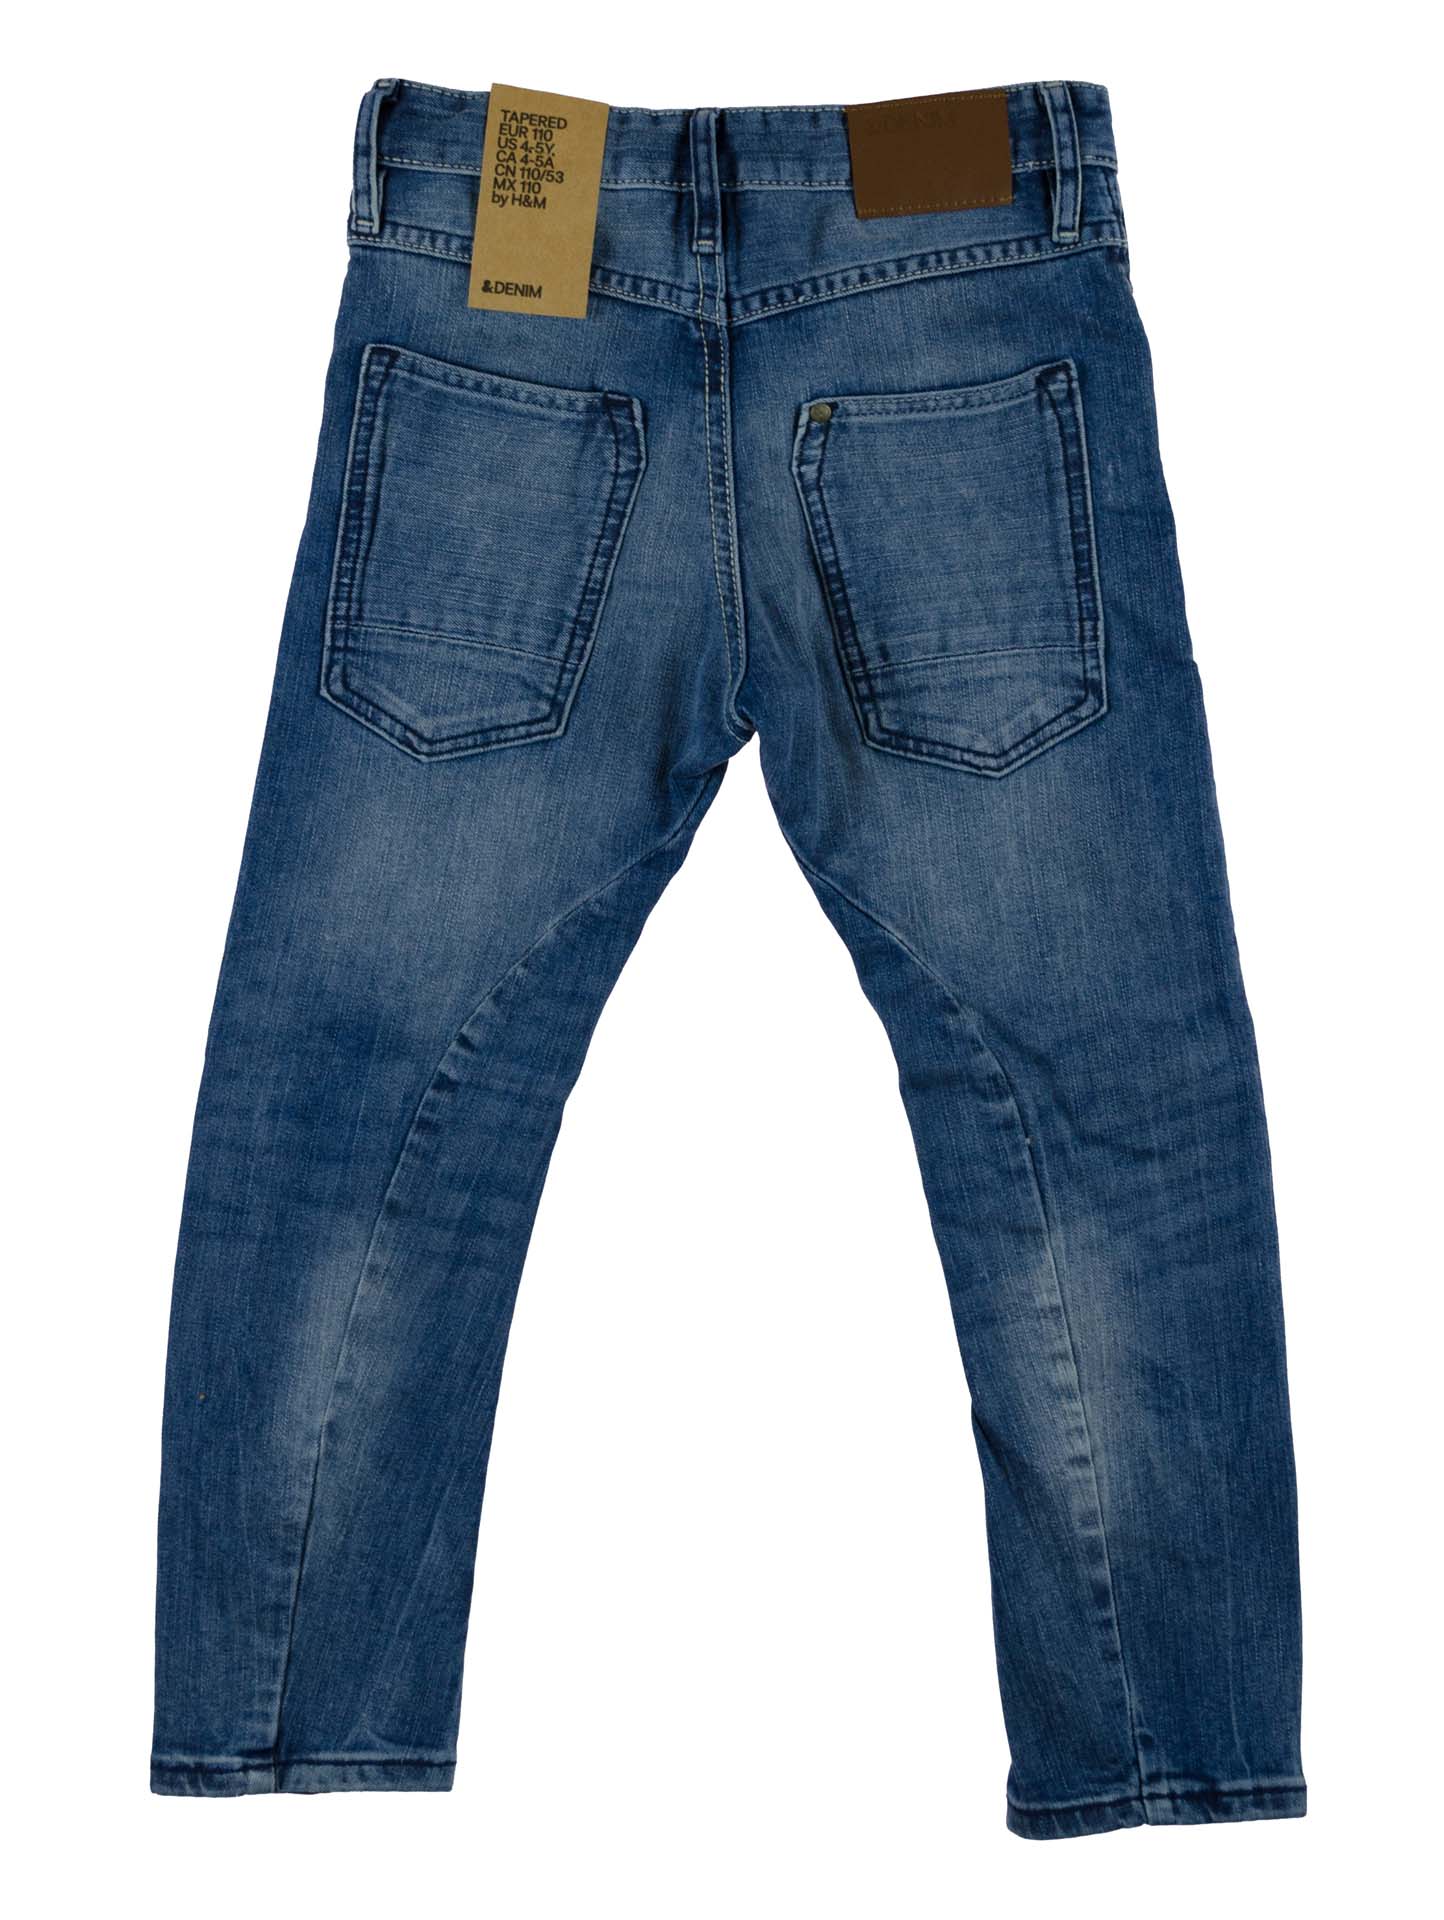 Стильные джинсы для мальчика H&M